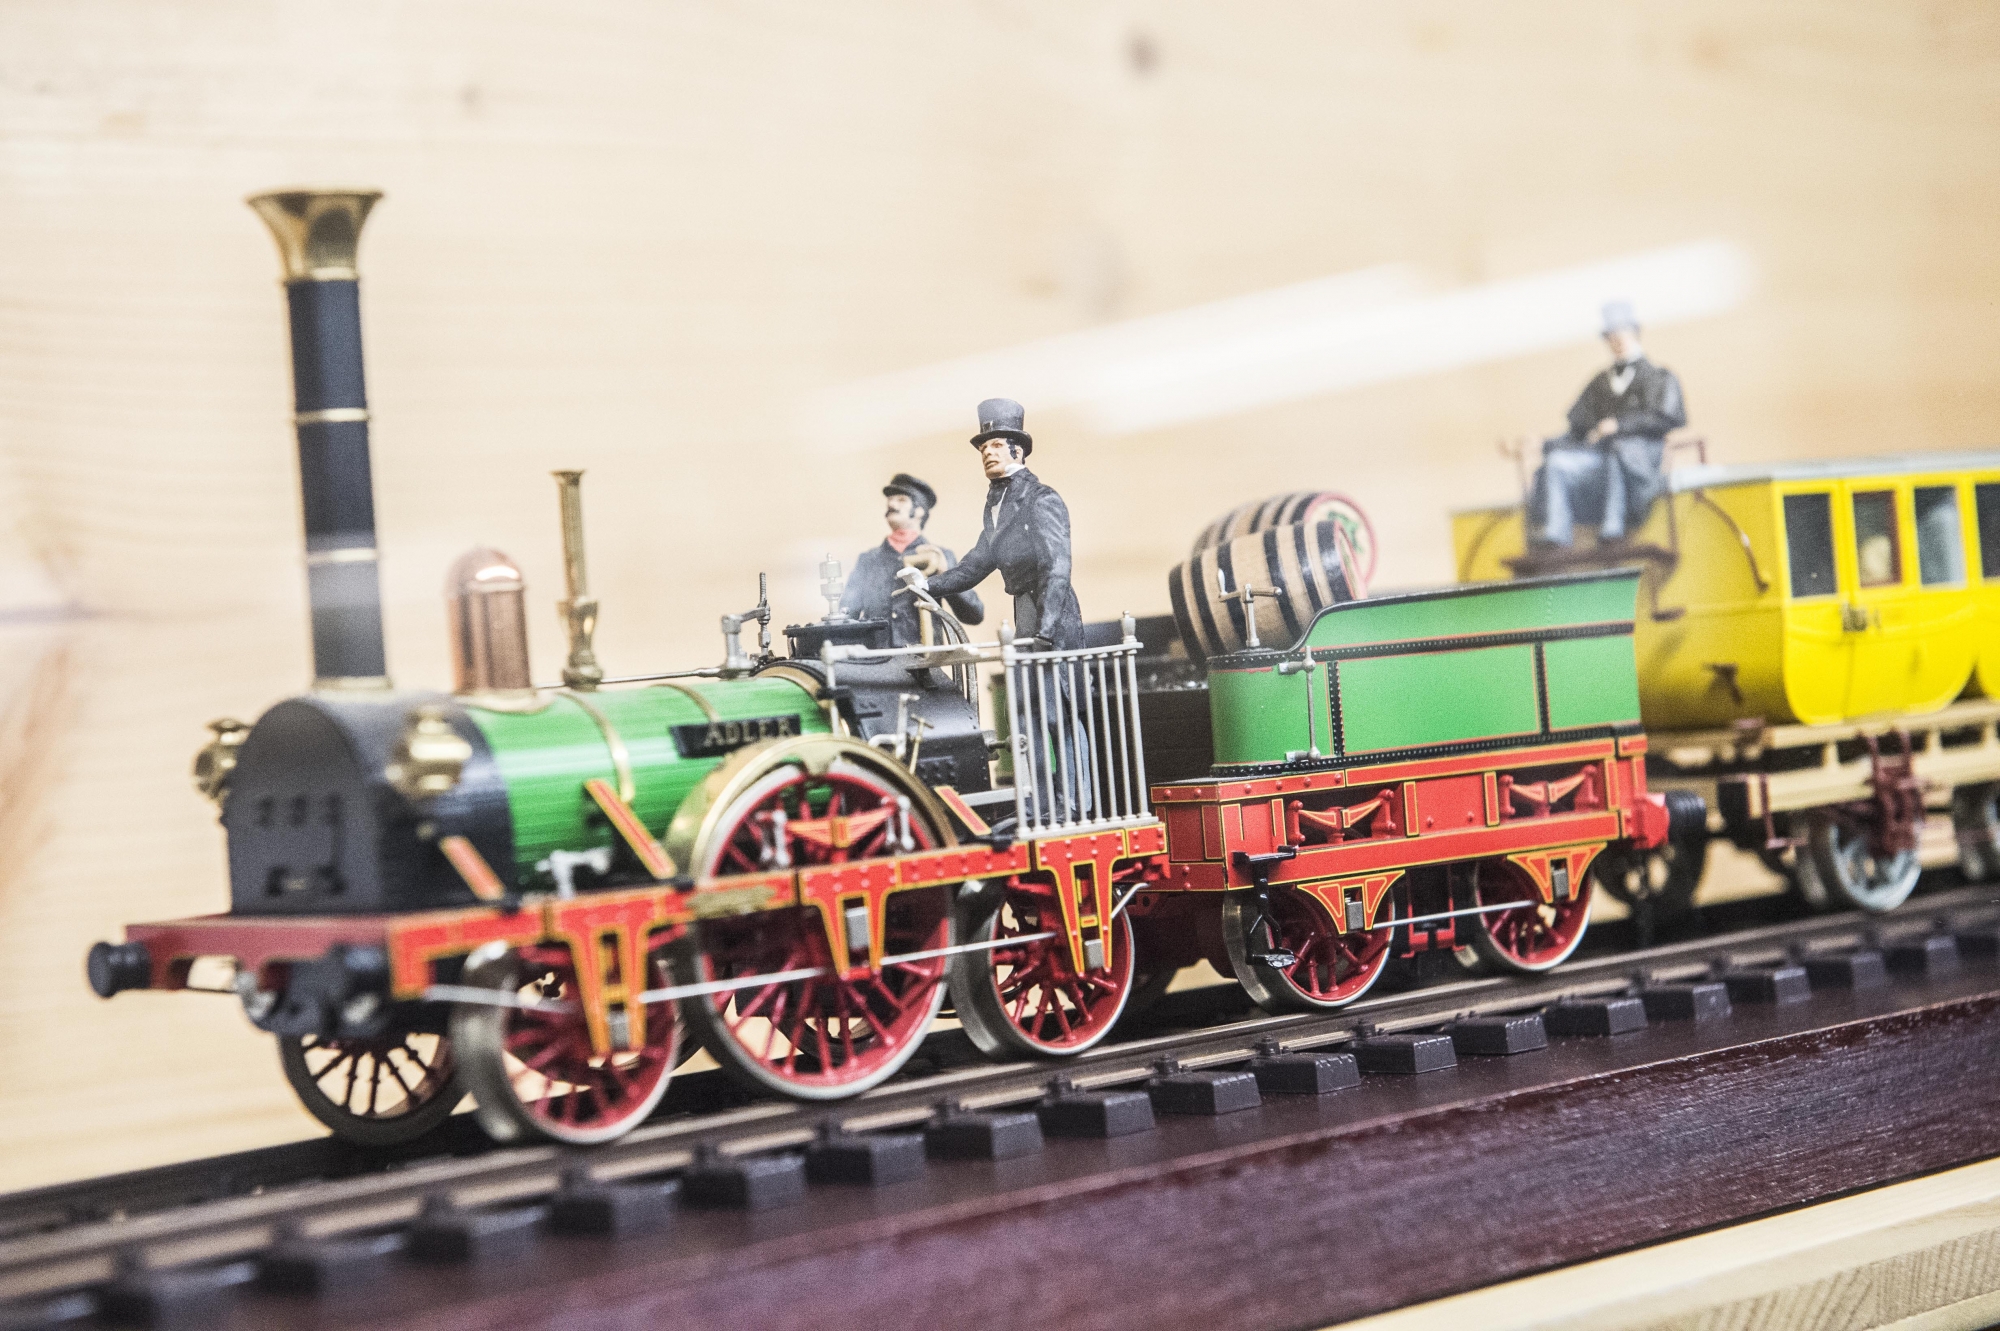 Une collection impressionnante de maquettes et de modèles réduits de trains attend les visiteurs à Crans-Montana.